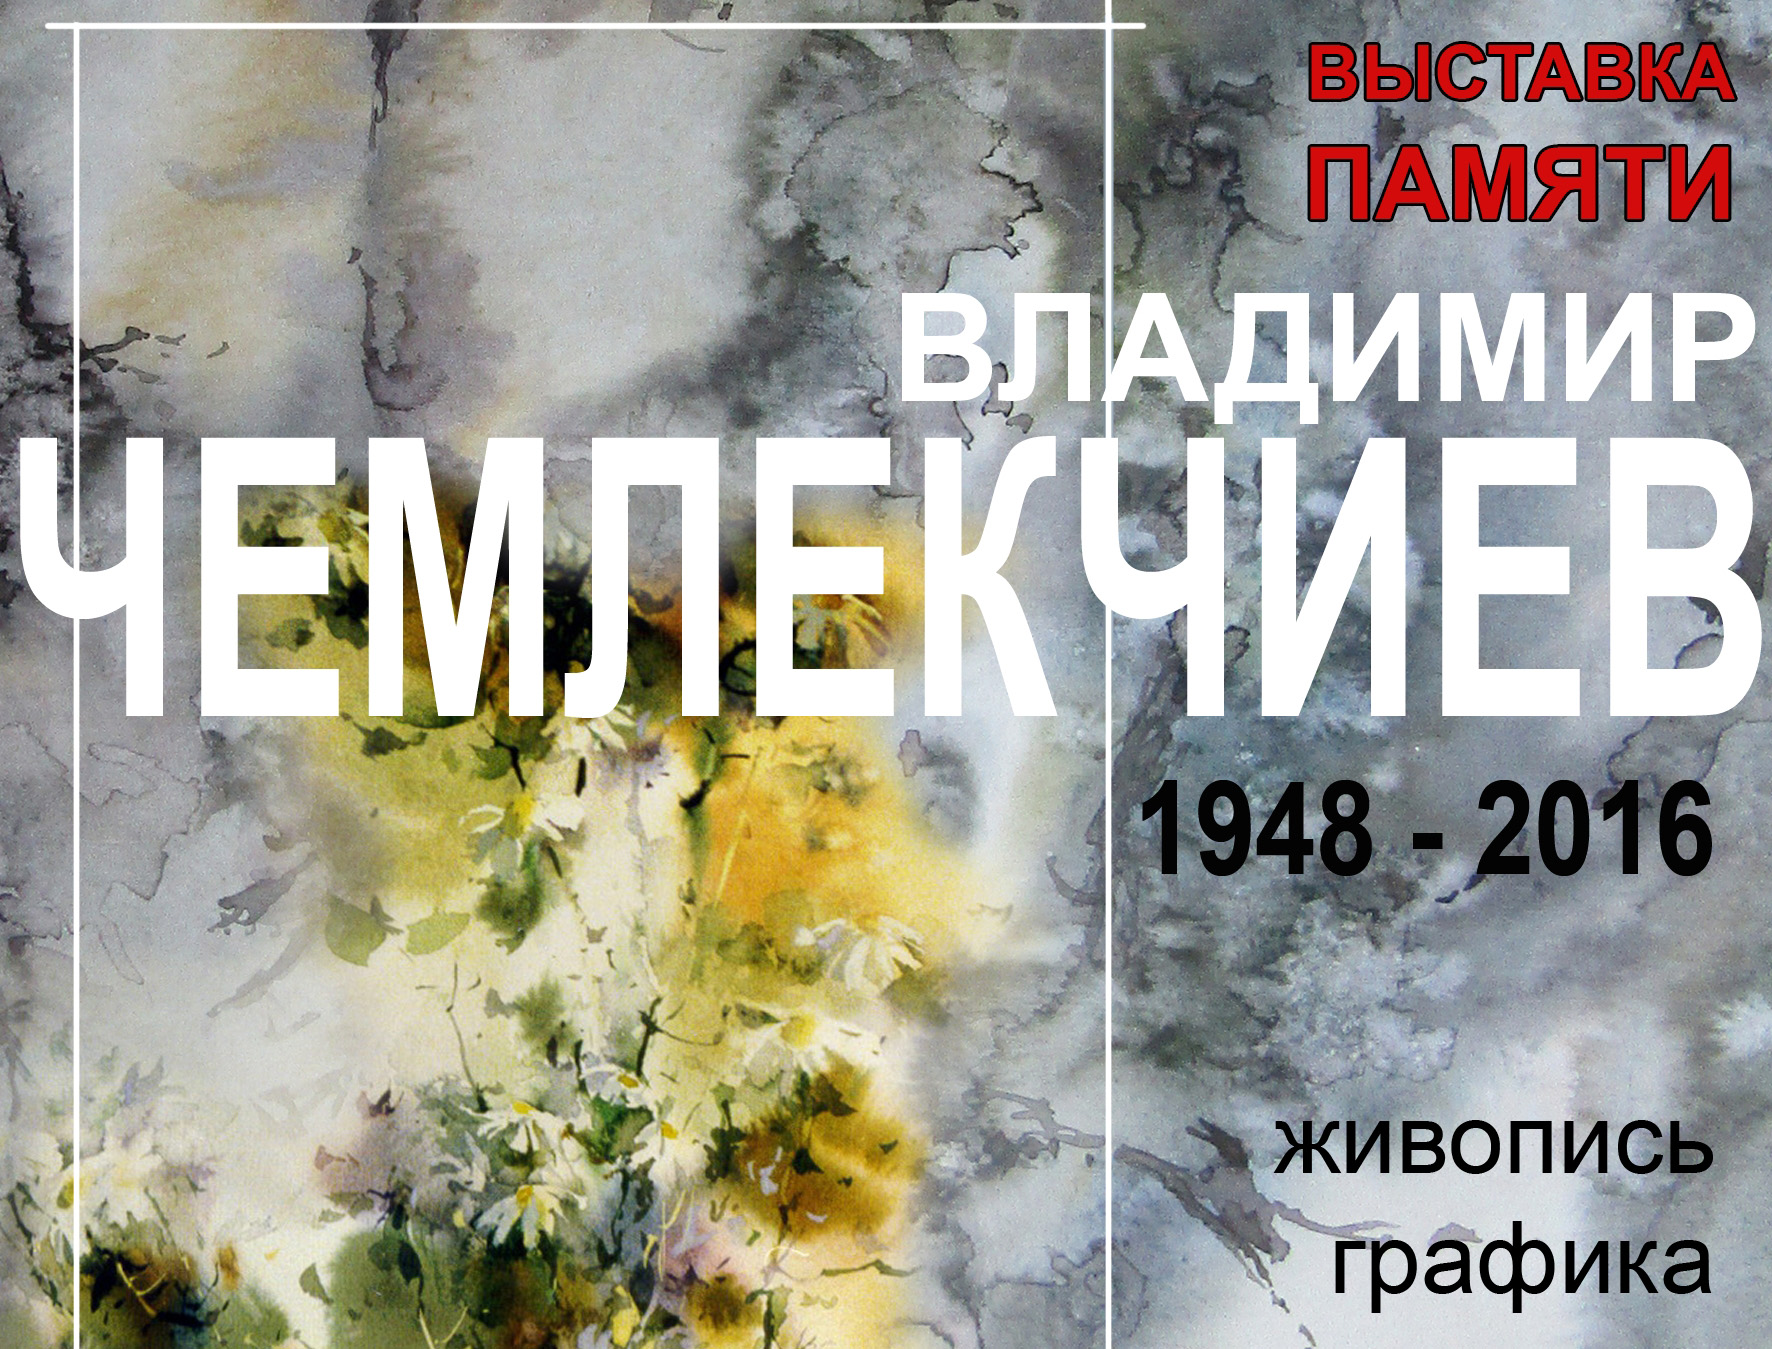 В Иванове откроется выставка памяти художника Владимира Чемлекчиева (1948 - 2016)